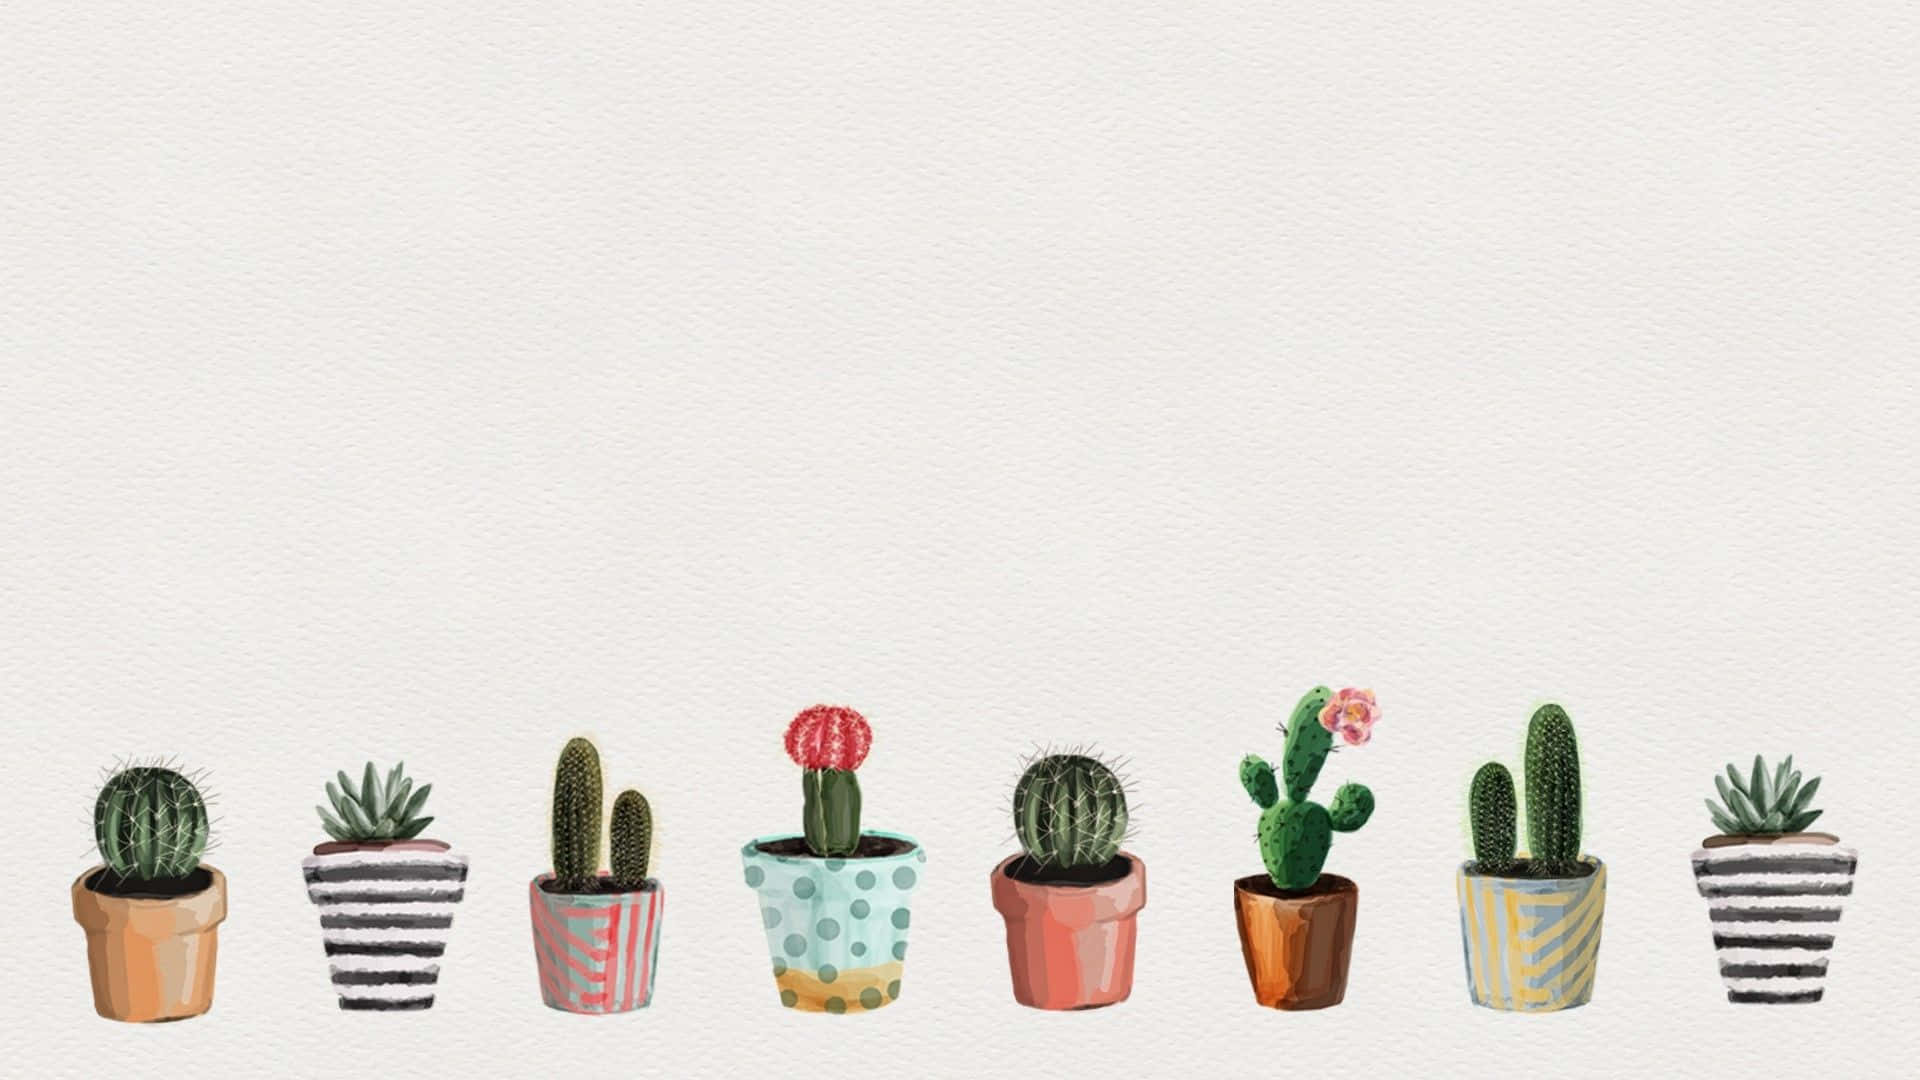 Cute Aesthetic Cactus Succulent Art Picture